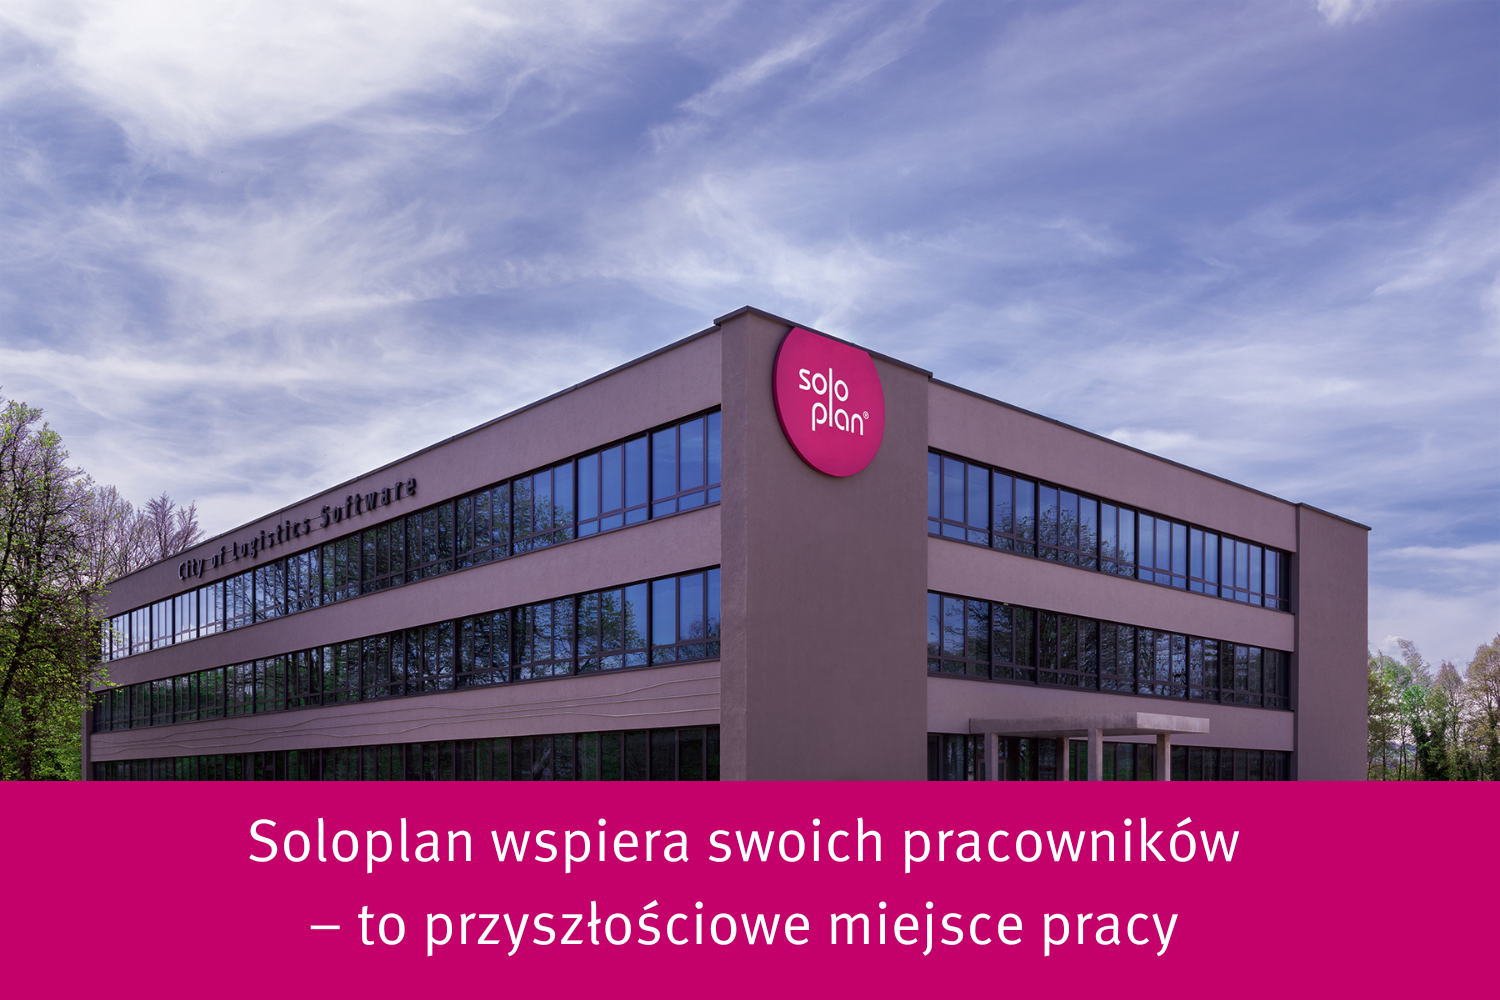 Soloplan wspiera swoich pracowników – to przyszłościowe miejsce pracy